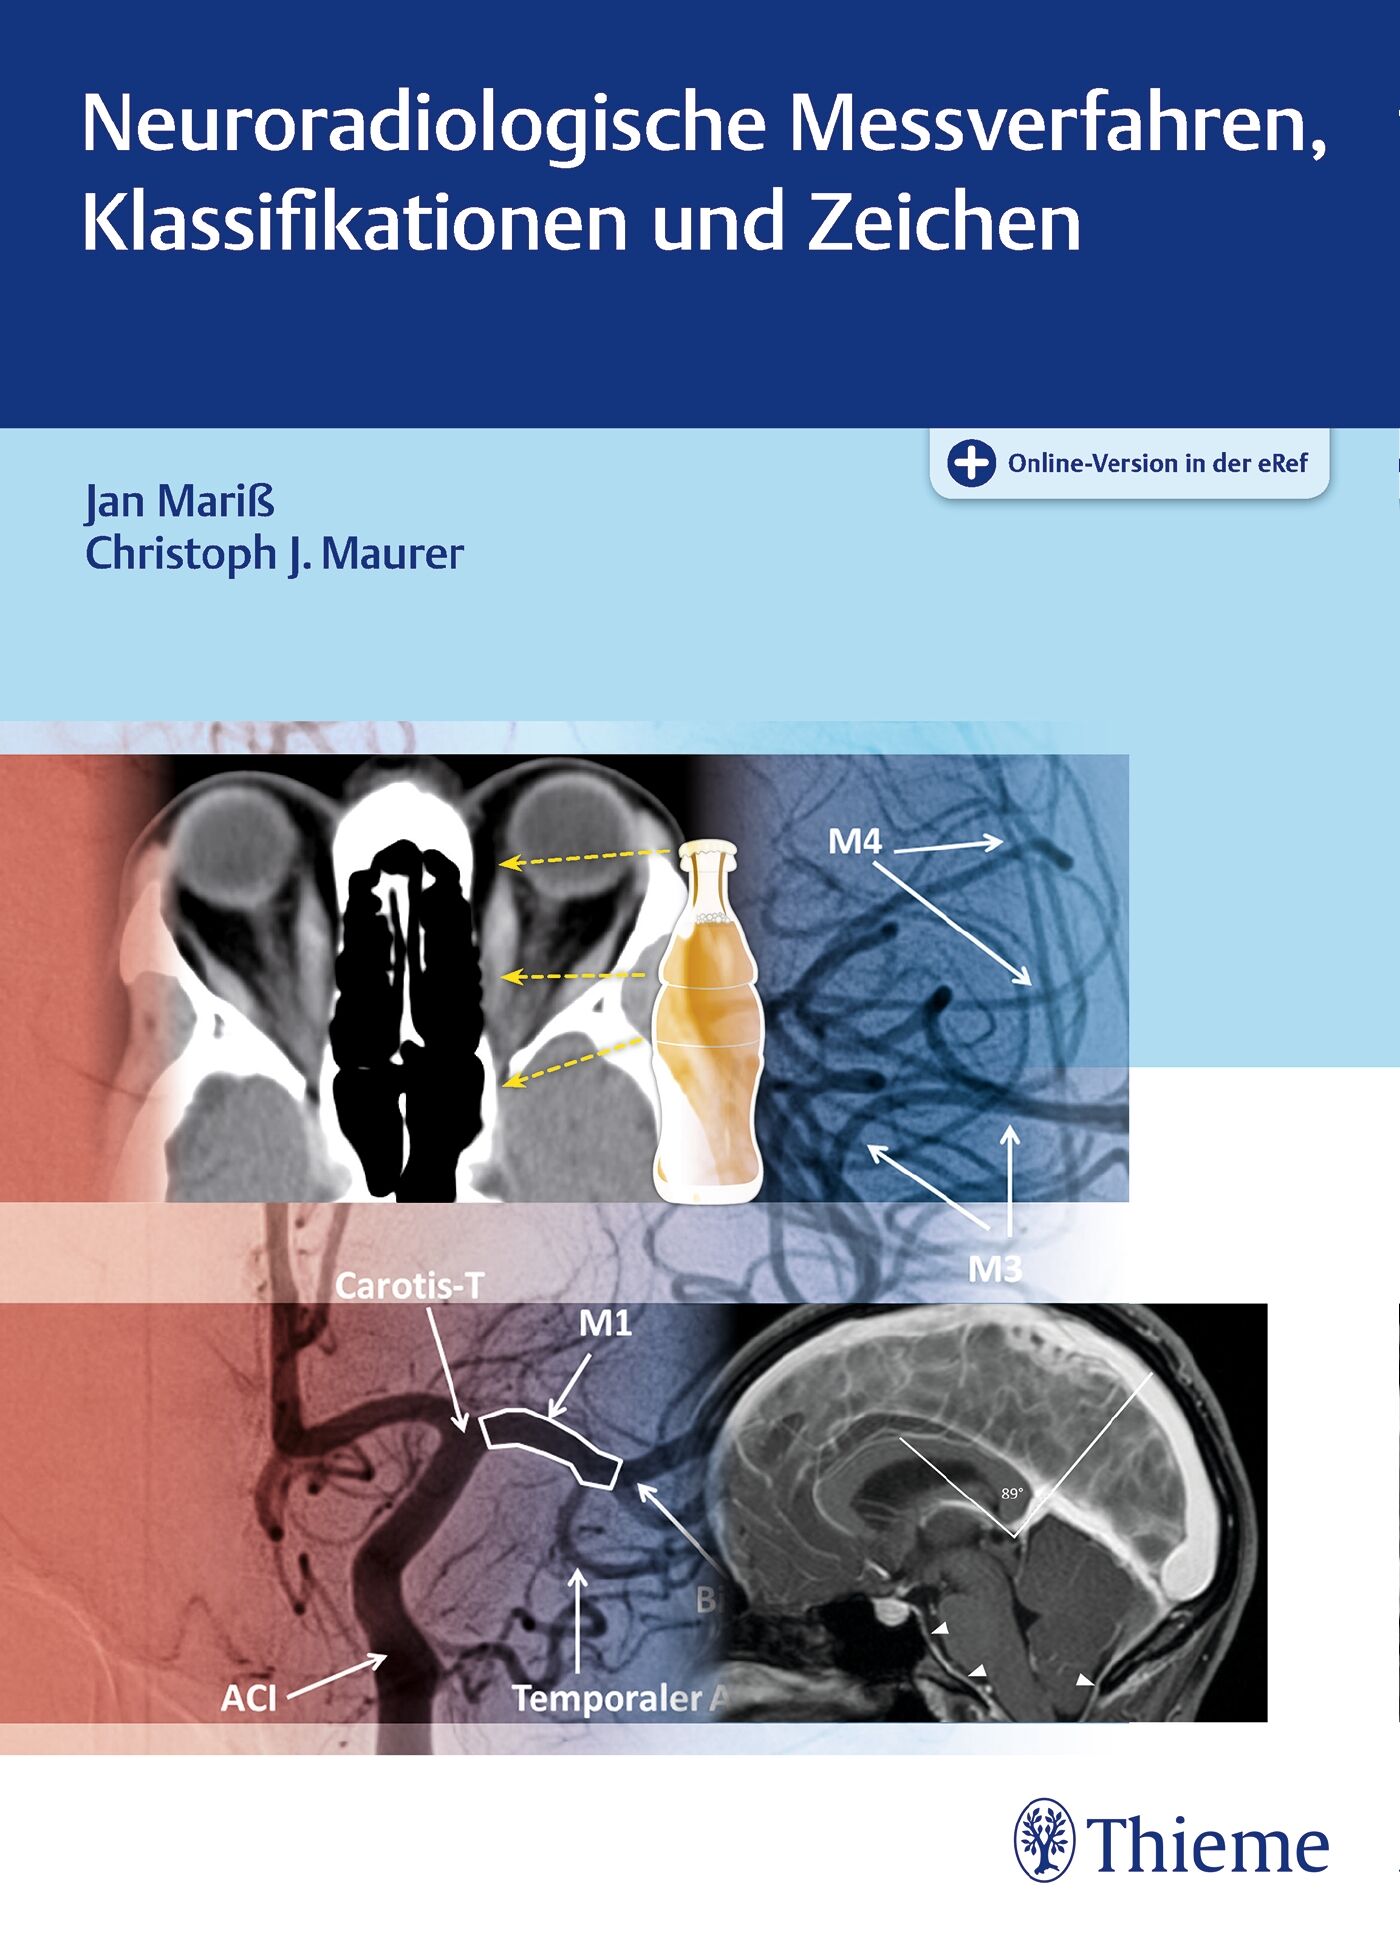 Neuroradiologische Messverfahren, Klassifikationen und Zeichen, 9783131754615